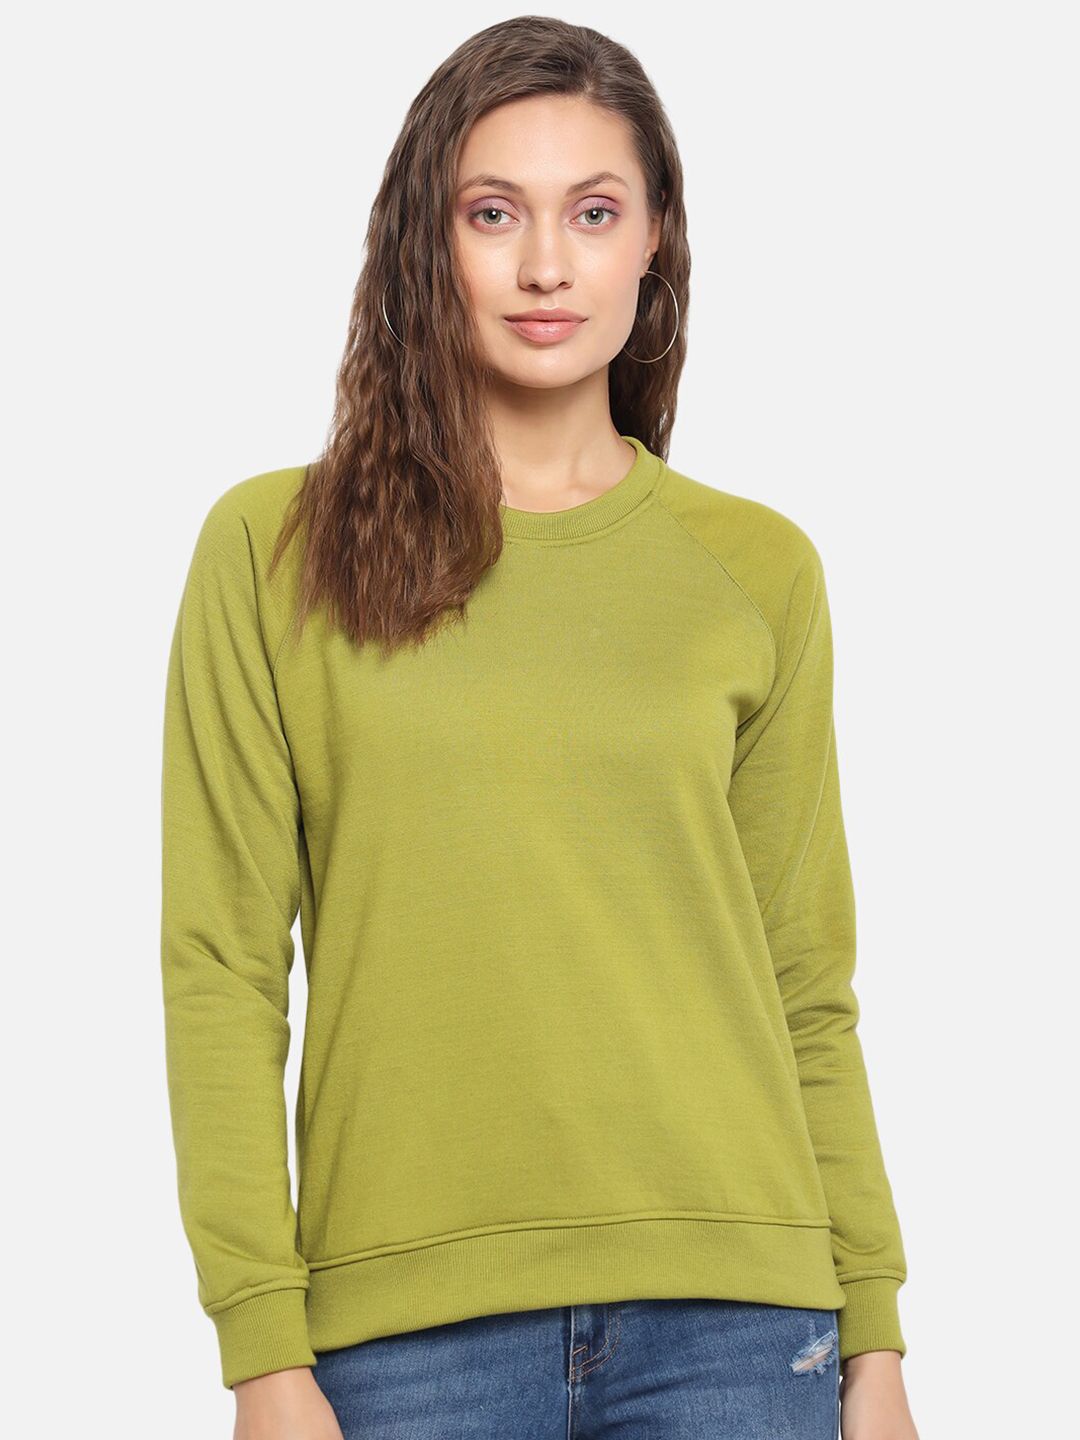 Trend Arrest Women Green Sweatshirt Price in India